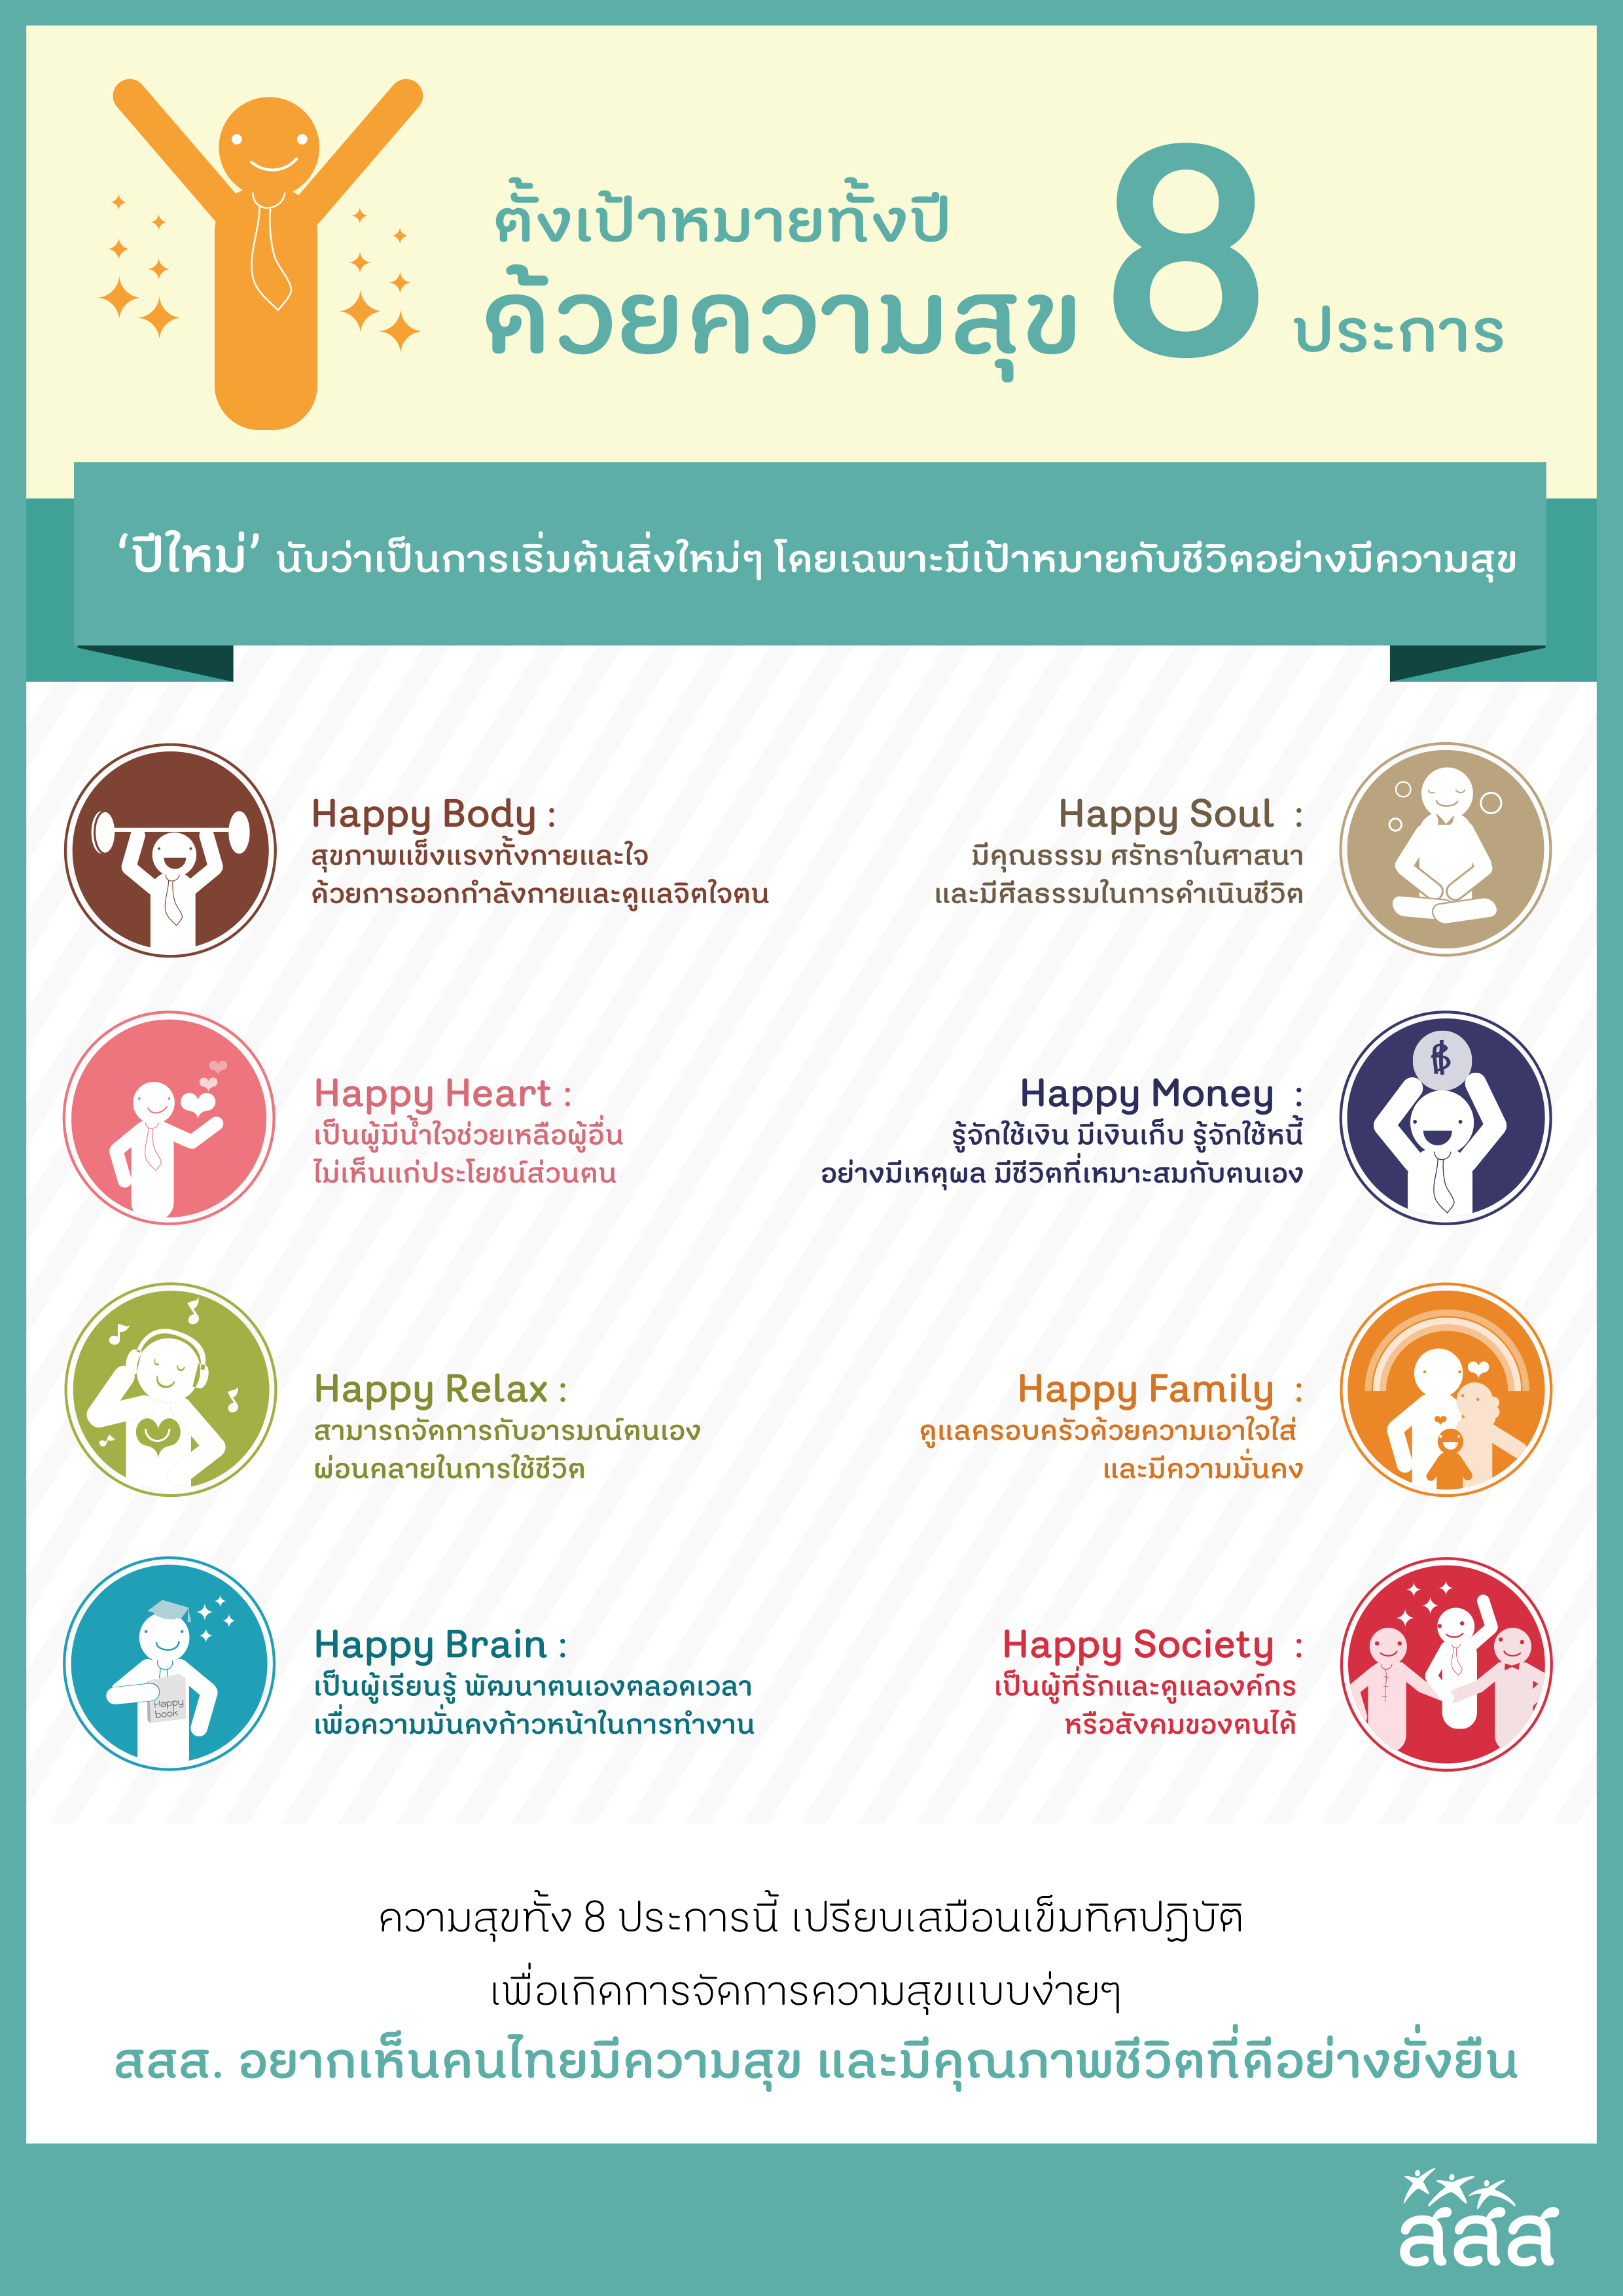 ตั้งเป้าหมายทั้งปี ด้วยความสุข 8 ประการ thaihealth